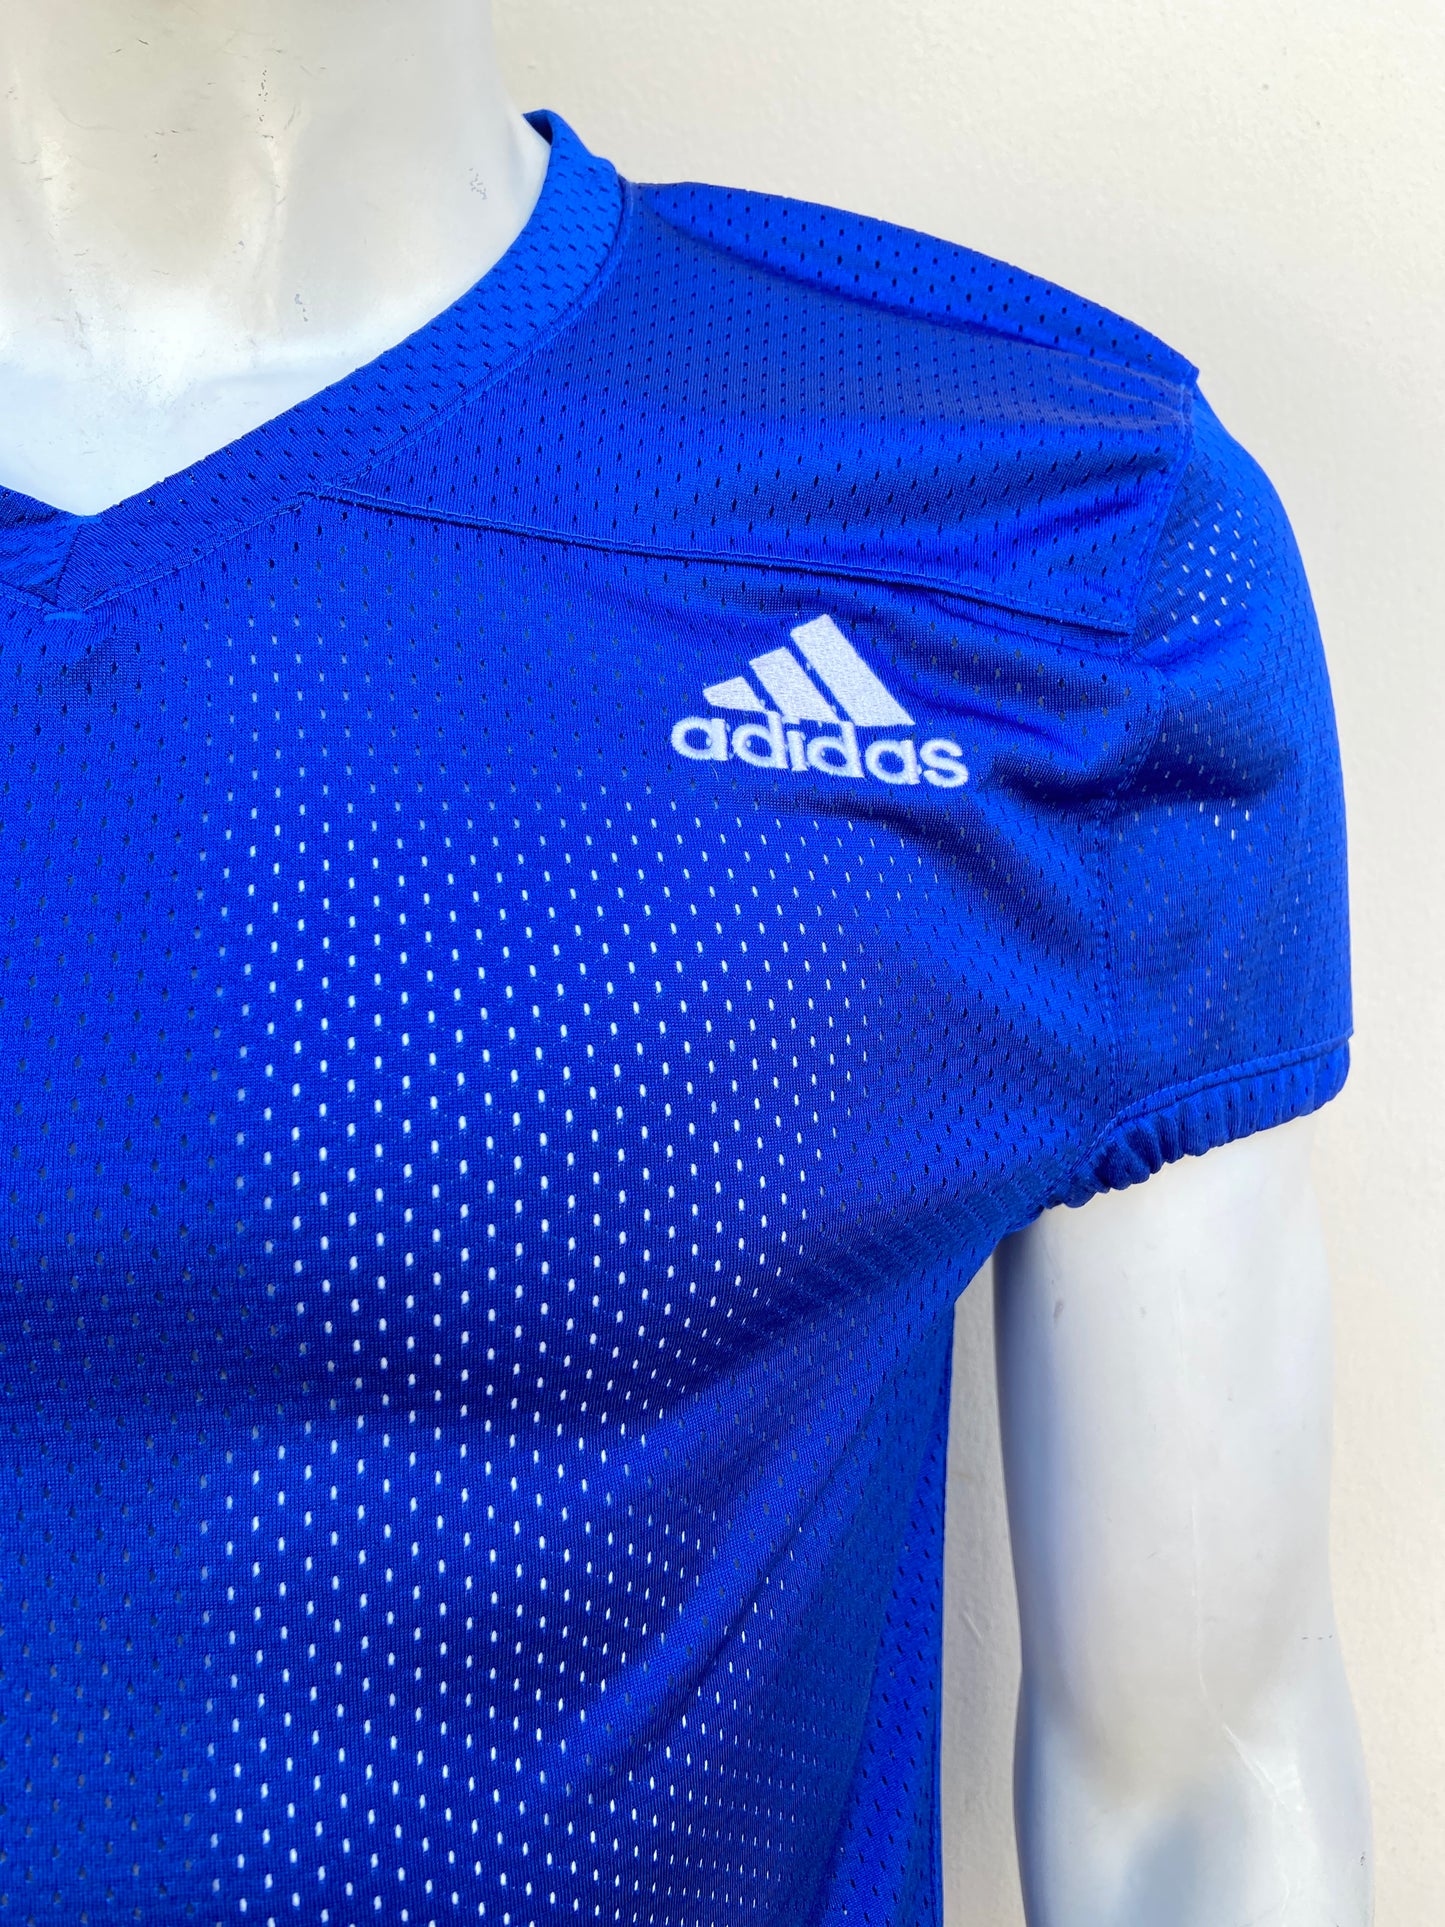 T-shirt Adidas original azul rey con mangas abucheadas,con logotipo de la marca a lado en blanco.